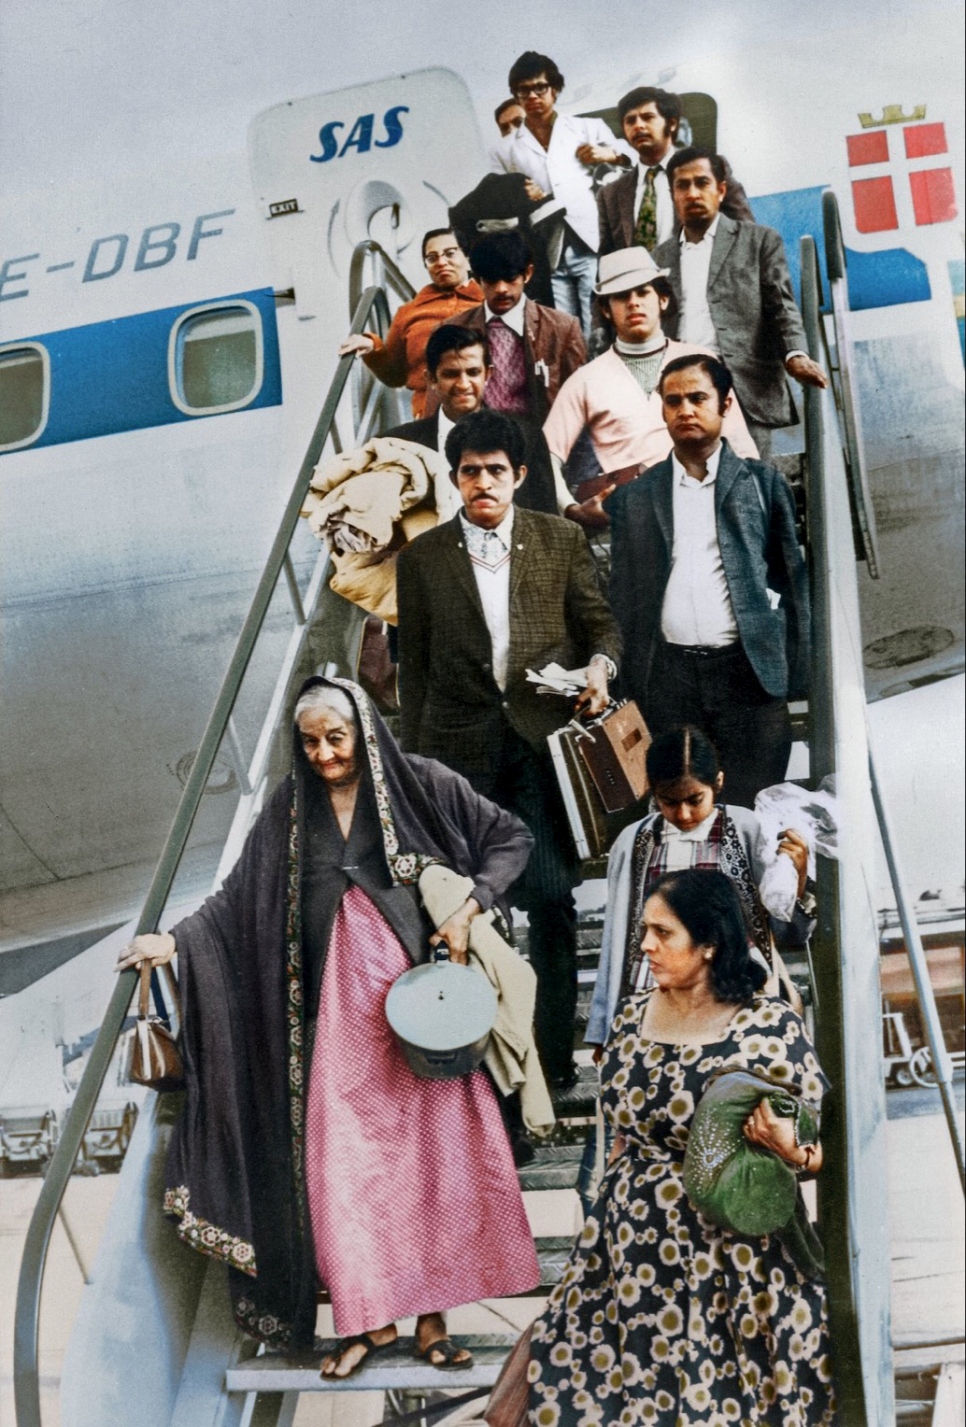 Al igual que la abuela de Aryan, decenas de miles de personas de Asia fueron expulsadas arbitrariamente de Uganda en la década de 1970. En consecuencia, se convirtieron en apátridas. En esta imagen puede verse un grupo de Uganda que aterrizó en Europa en 1972.